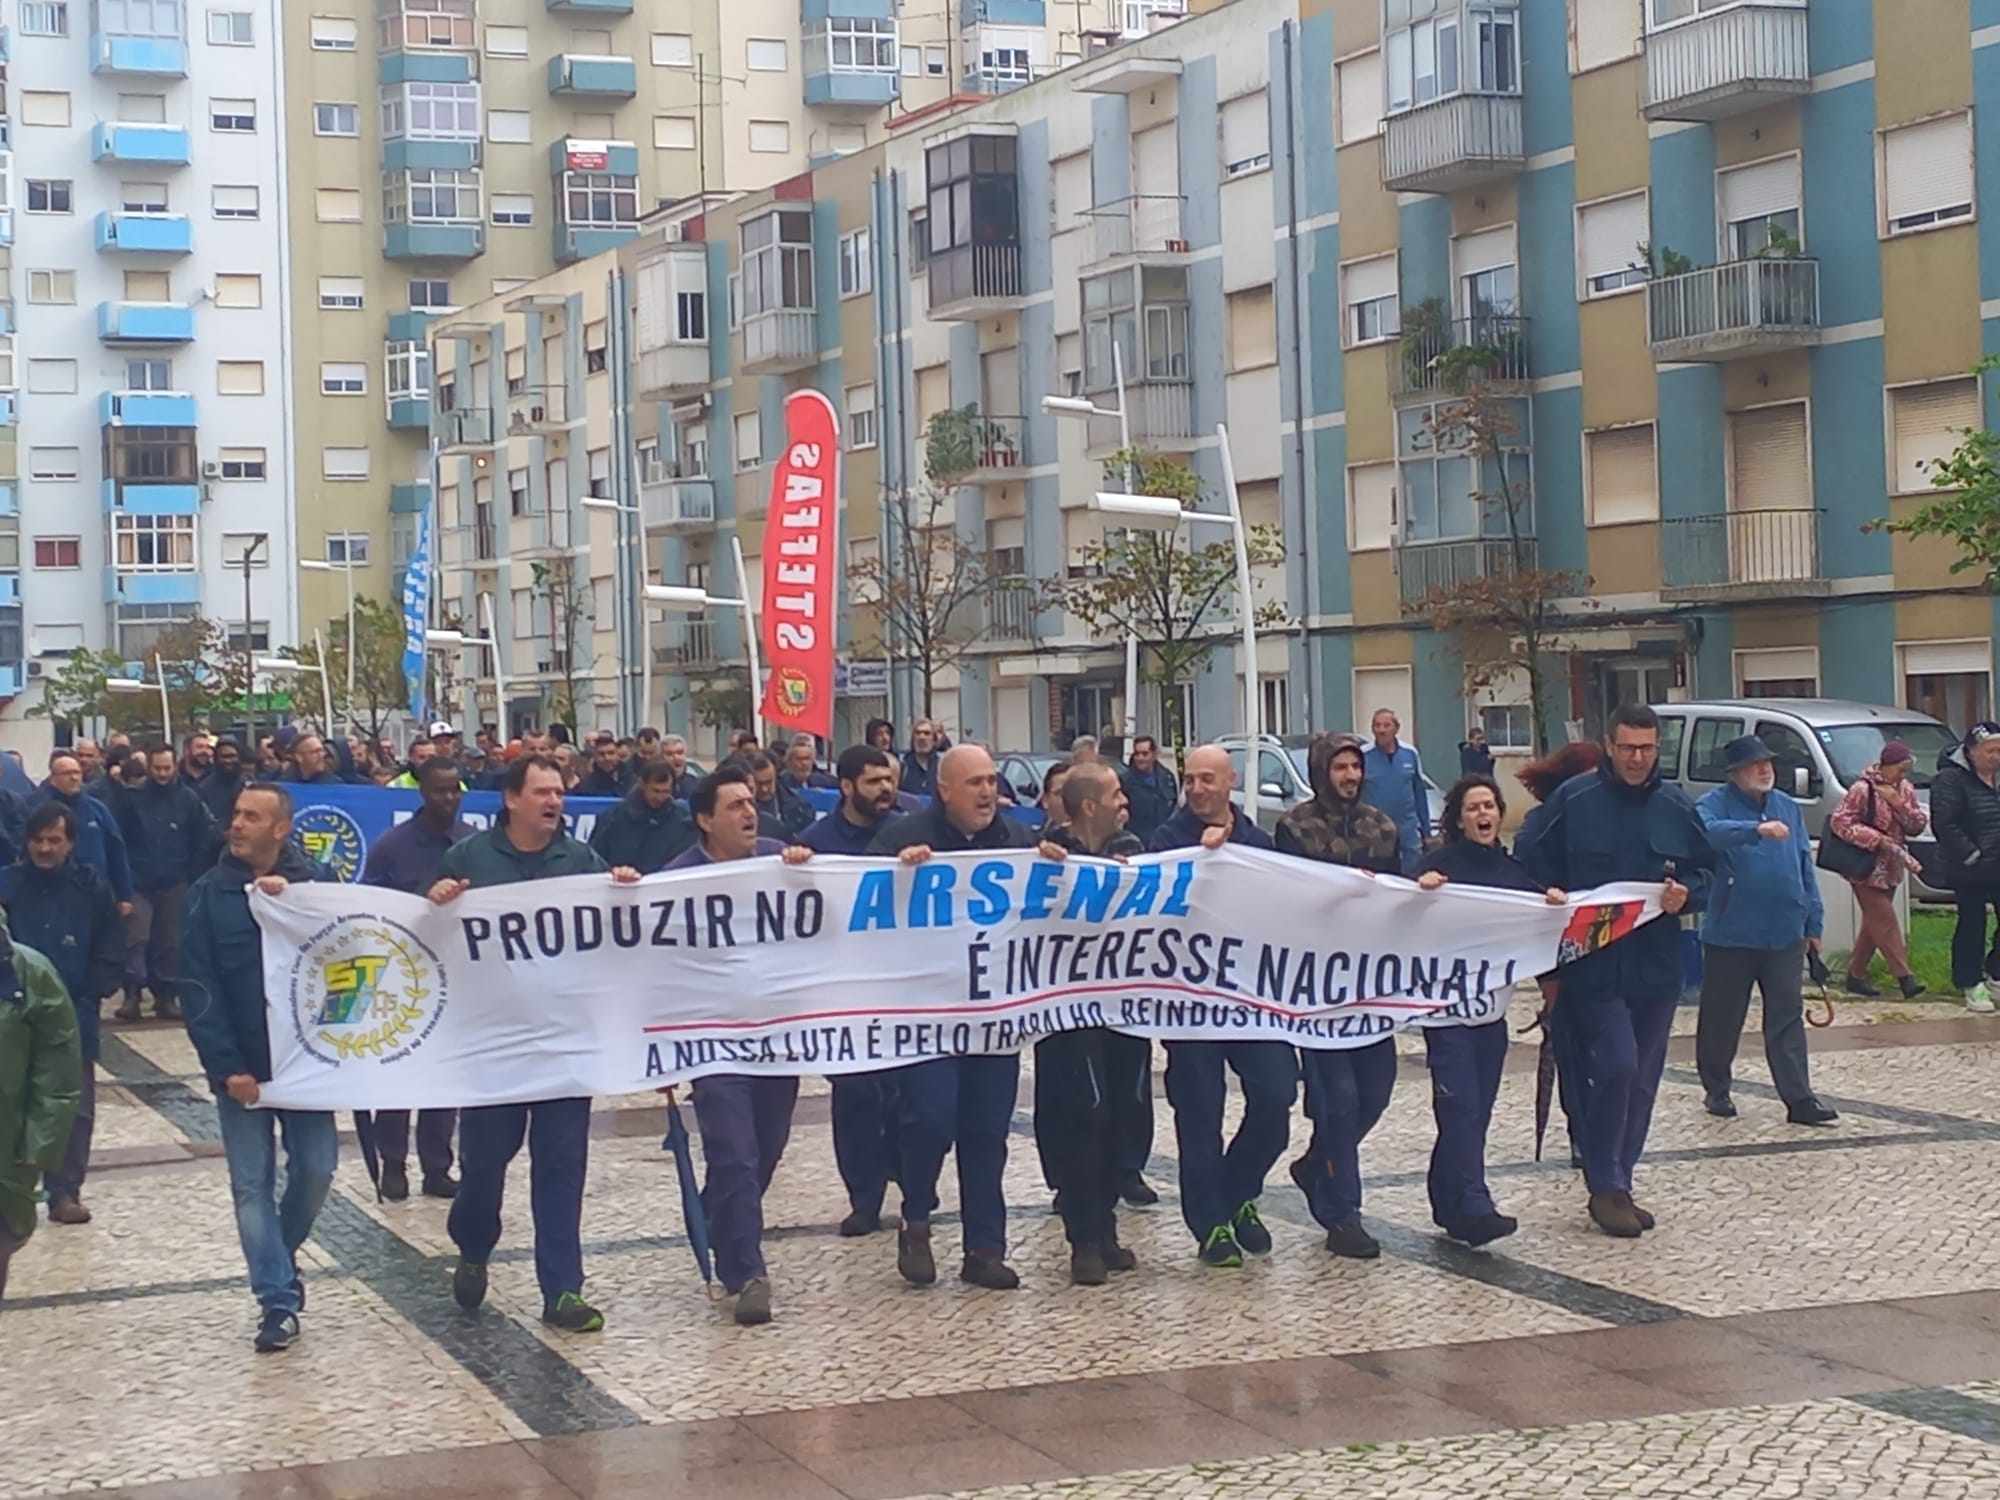 Trabalhadores do Arsenal do Alfeite manifestaram se em Almada